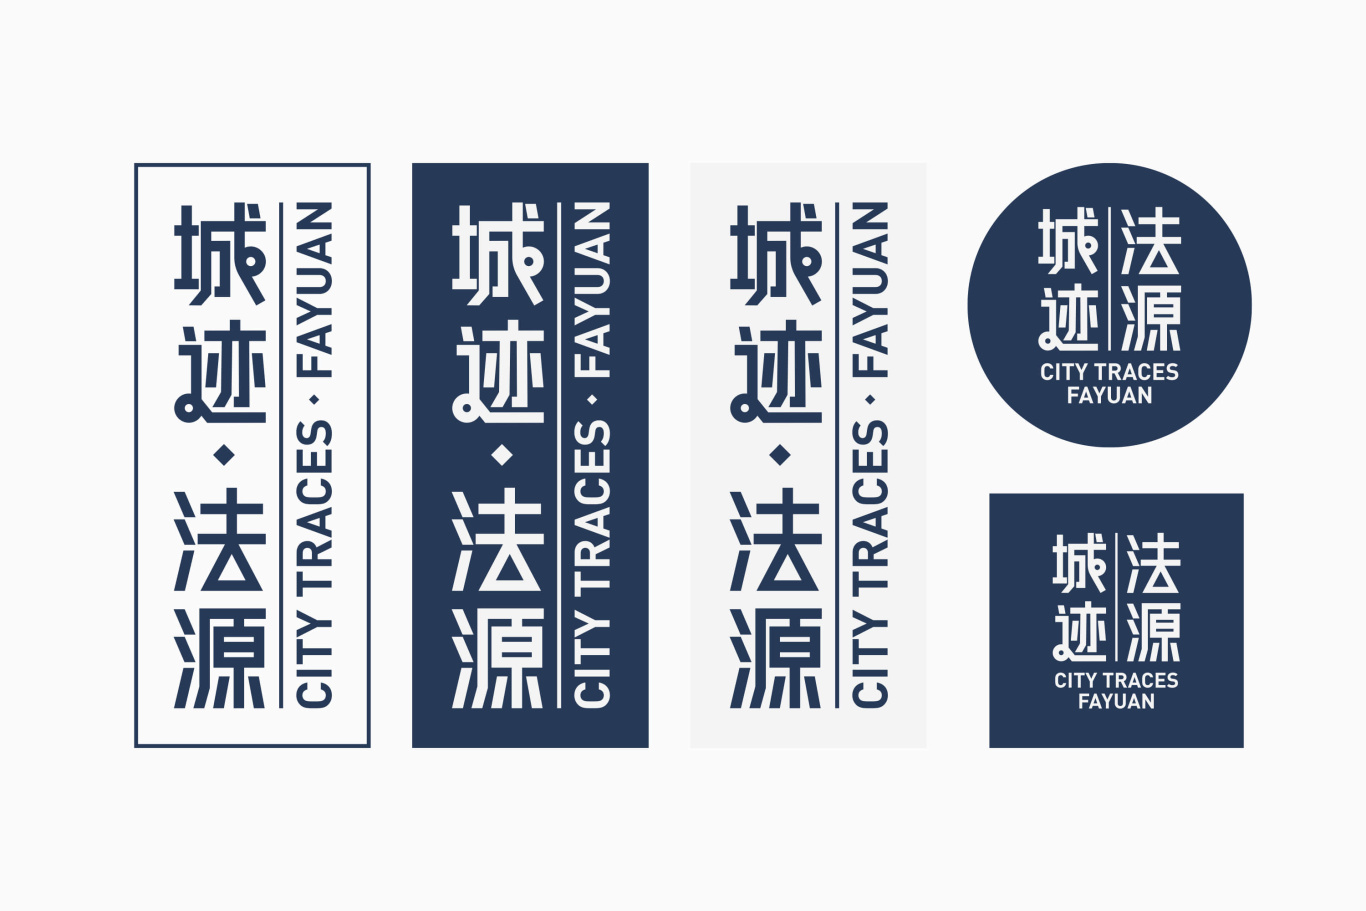 北京设计周分会场法源寺更新计划品牌活动VI全案图5